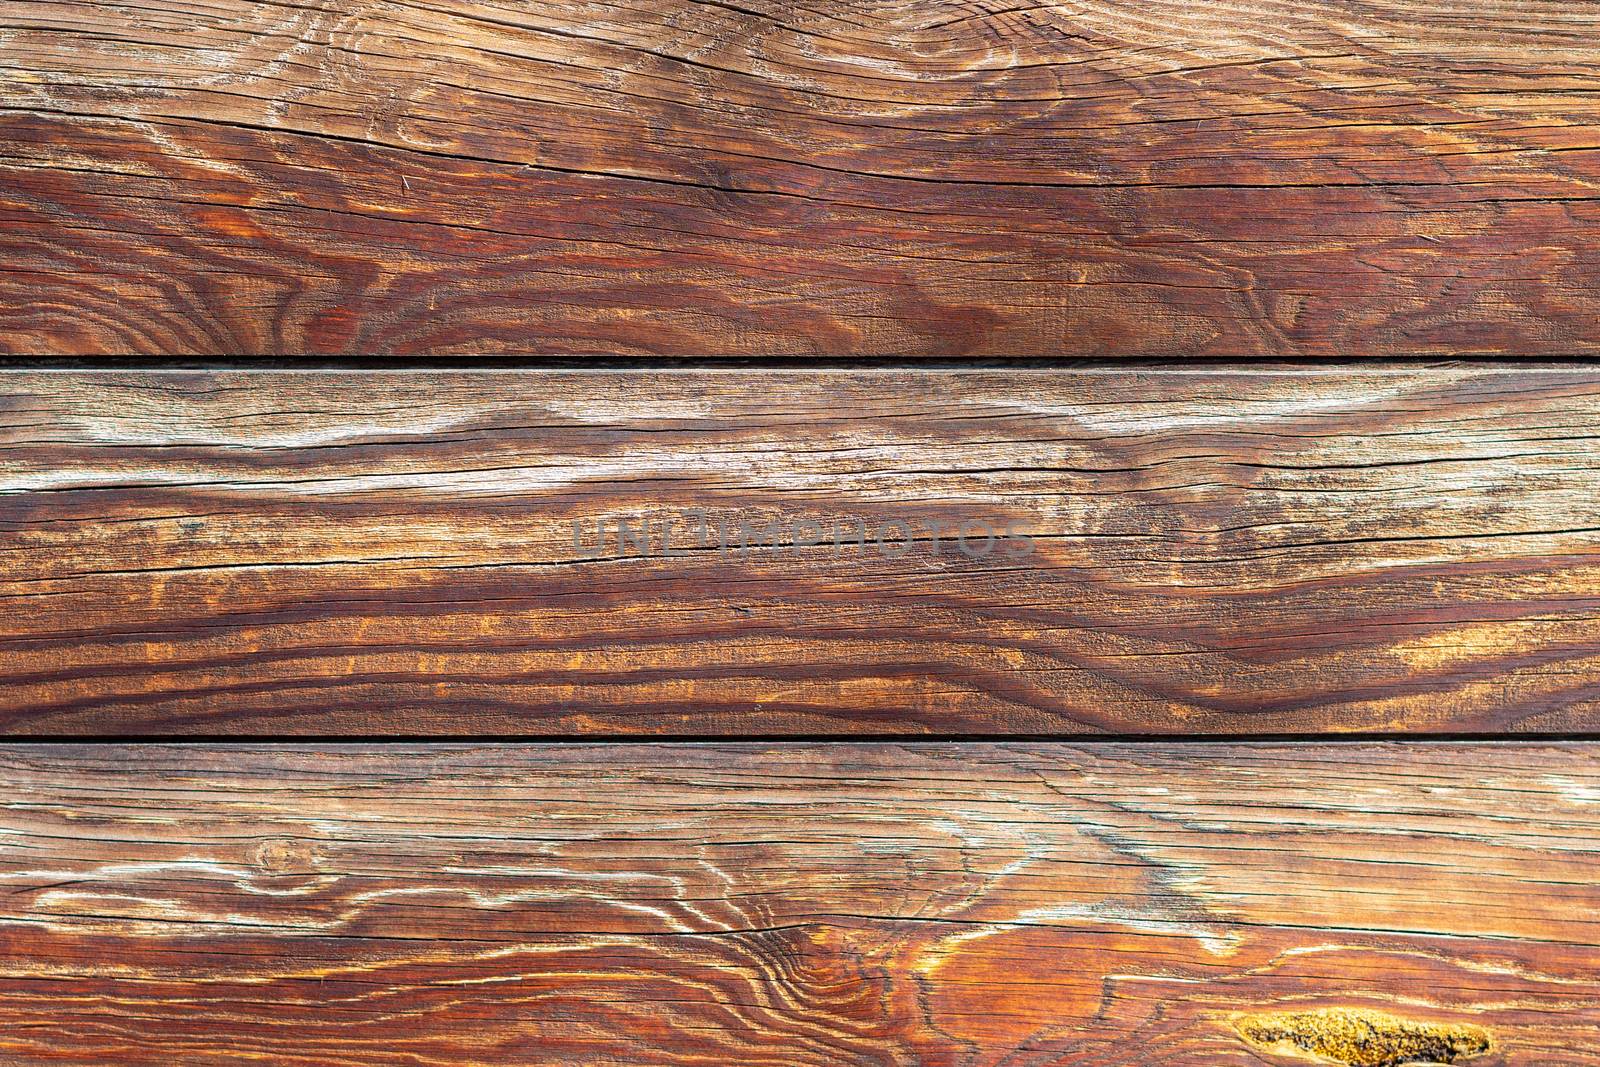 wooden wall with logs by Serhii_Voroshchuk